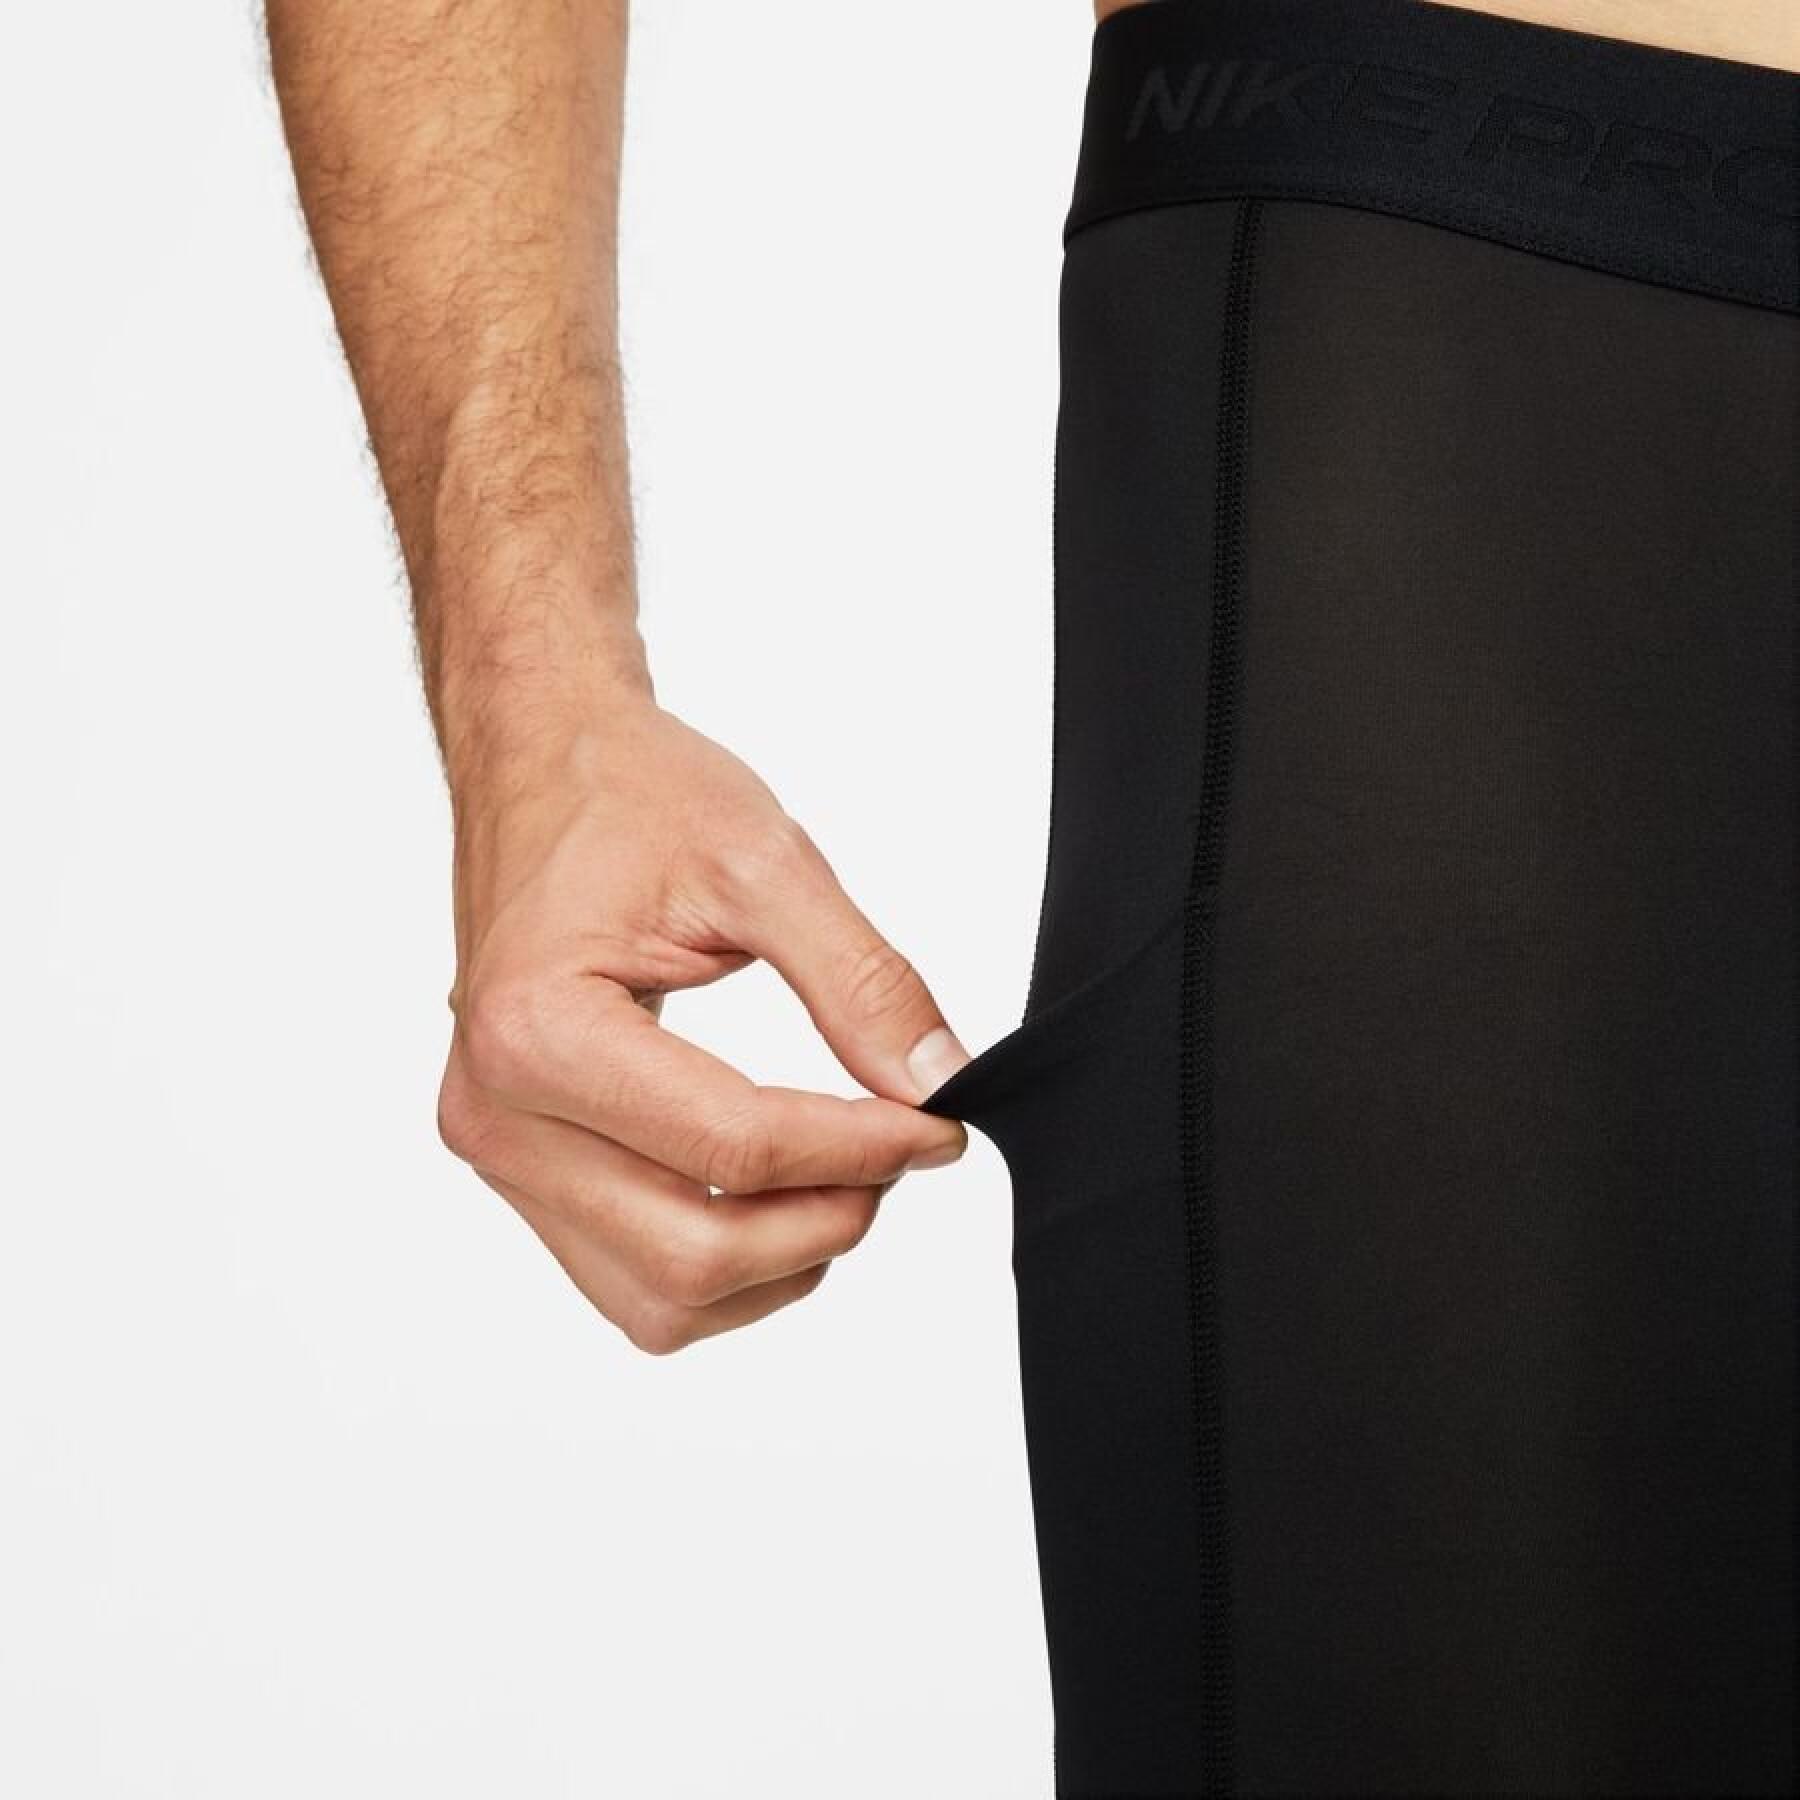 Legging Nike Pro dri-FIt - Trousers - Men's textile - Running